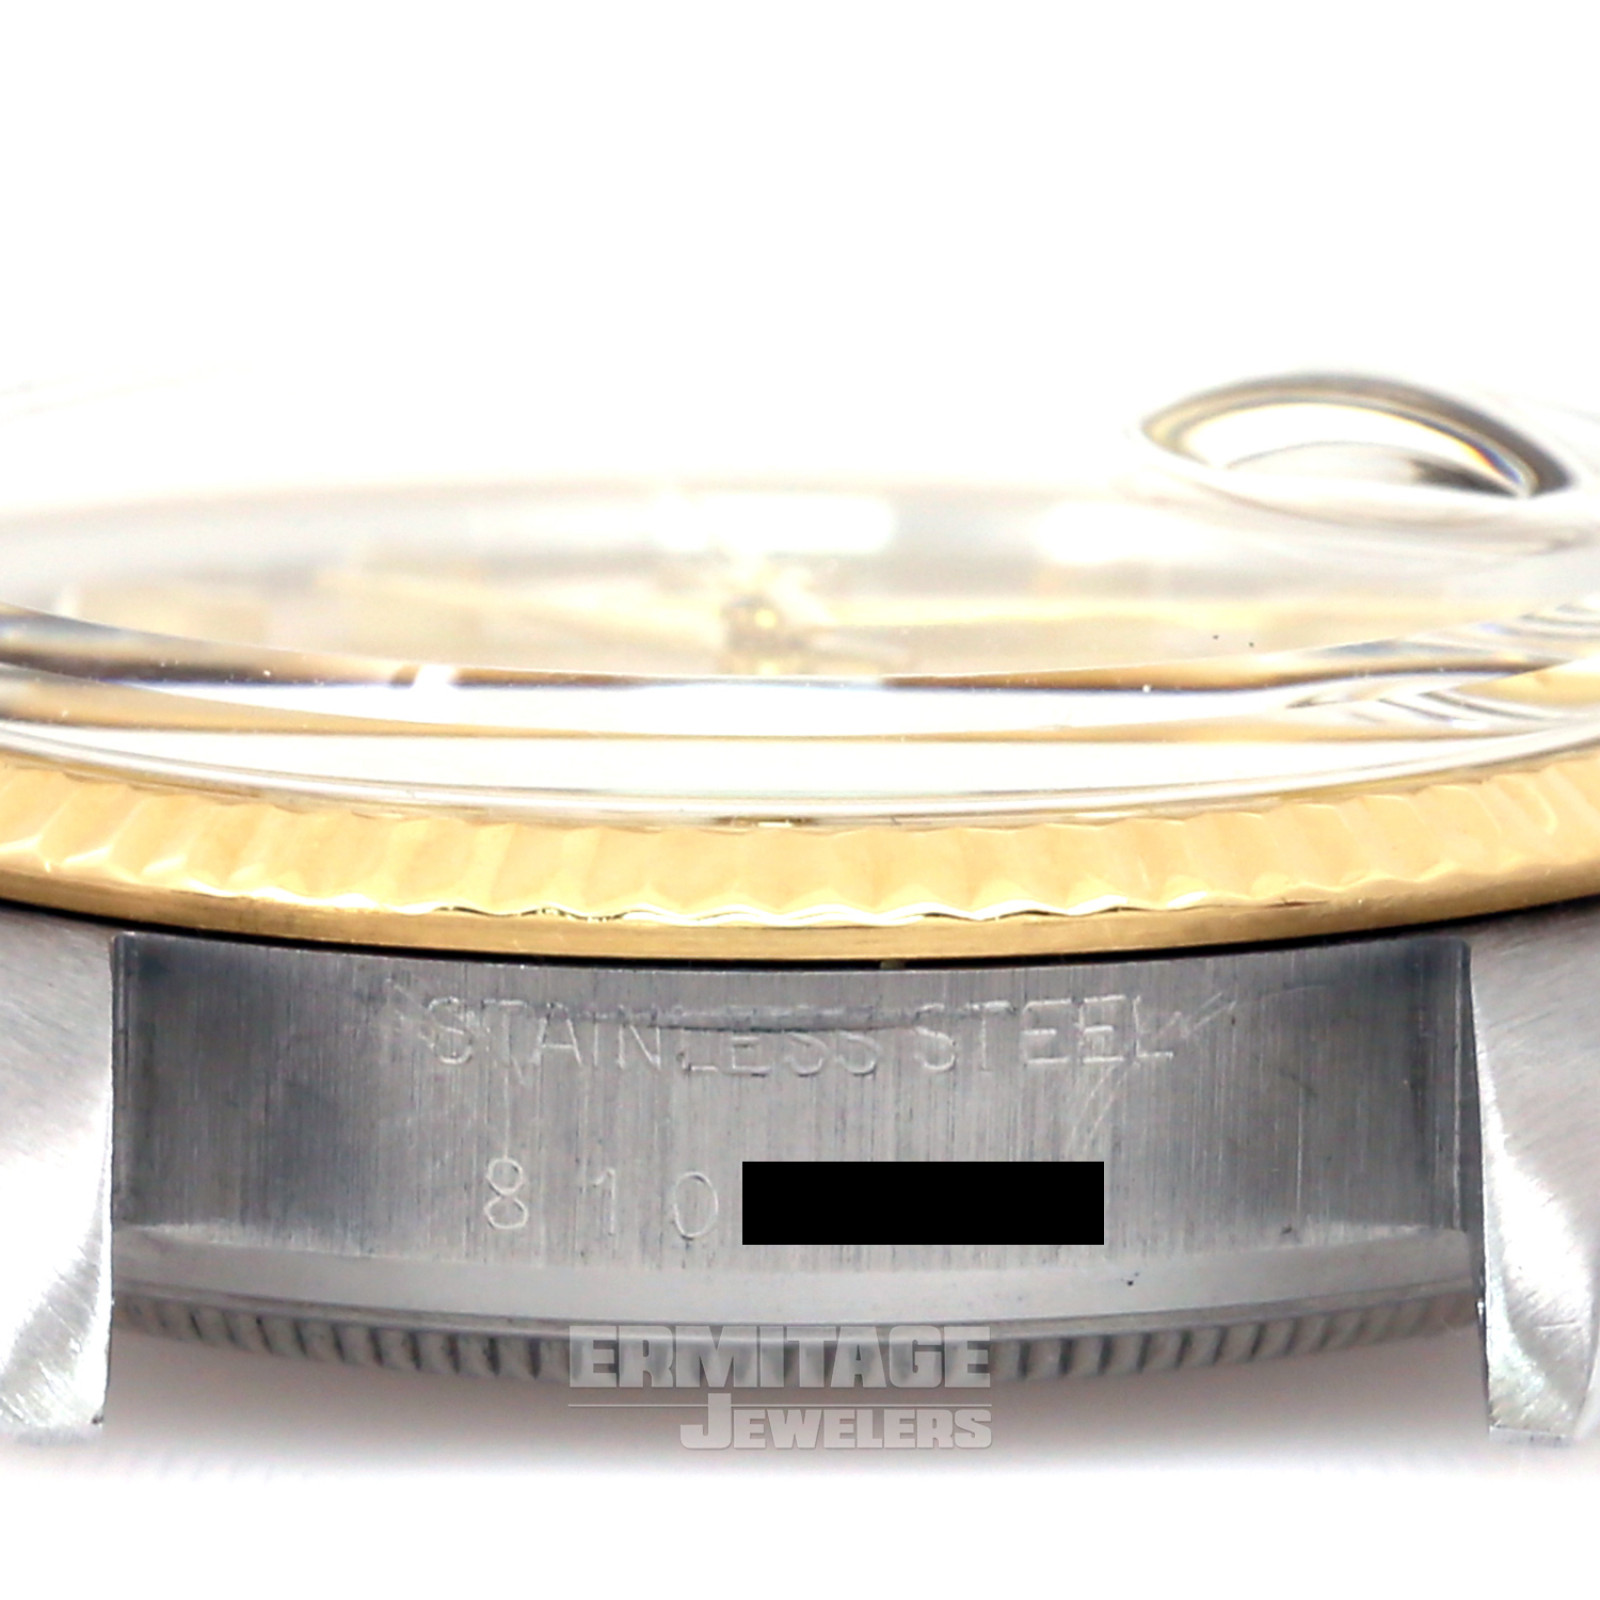 Rolex Datejust 16013 36 mm Gold & Steel on Jubilee